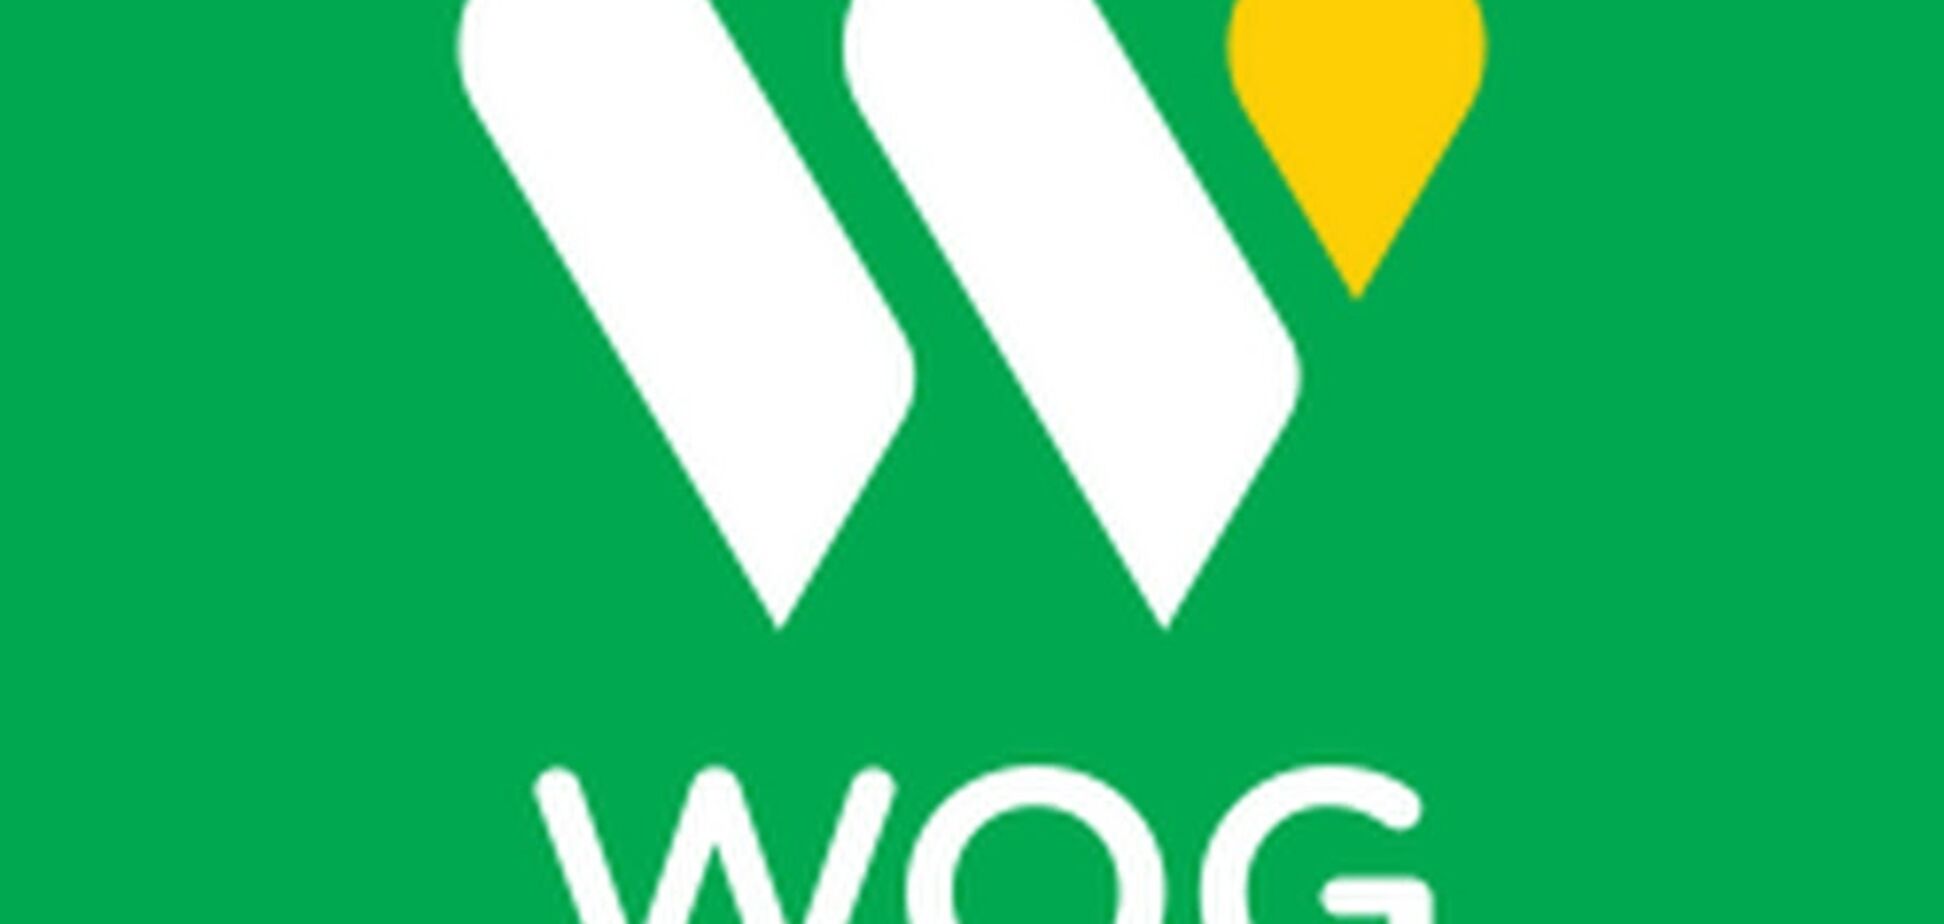 WOG попала в топ-100 дорогих брендов Украины: инфографика